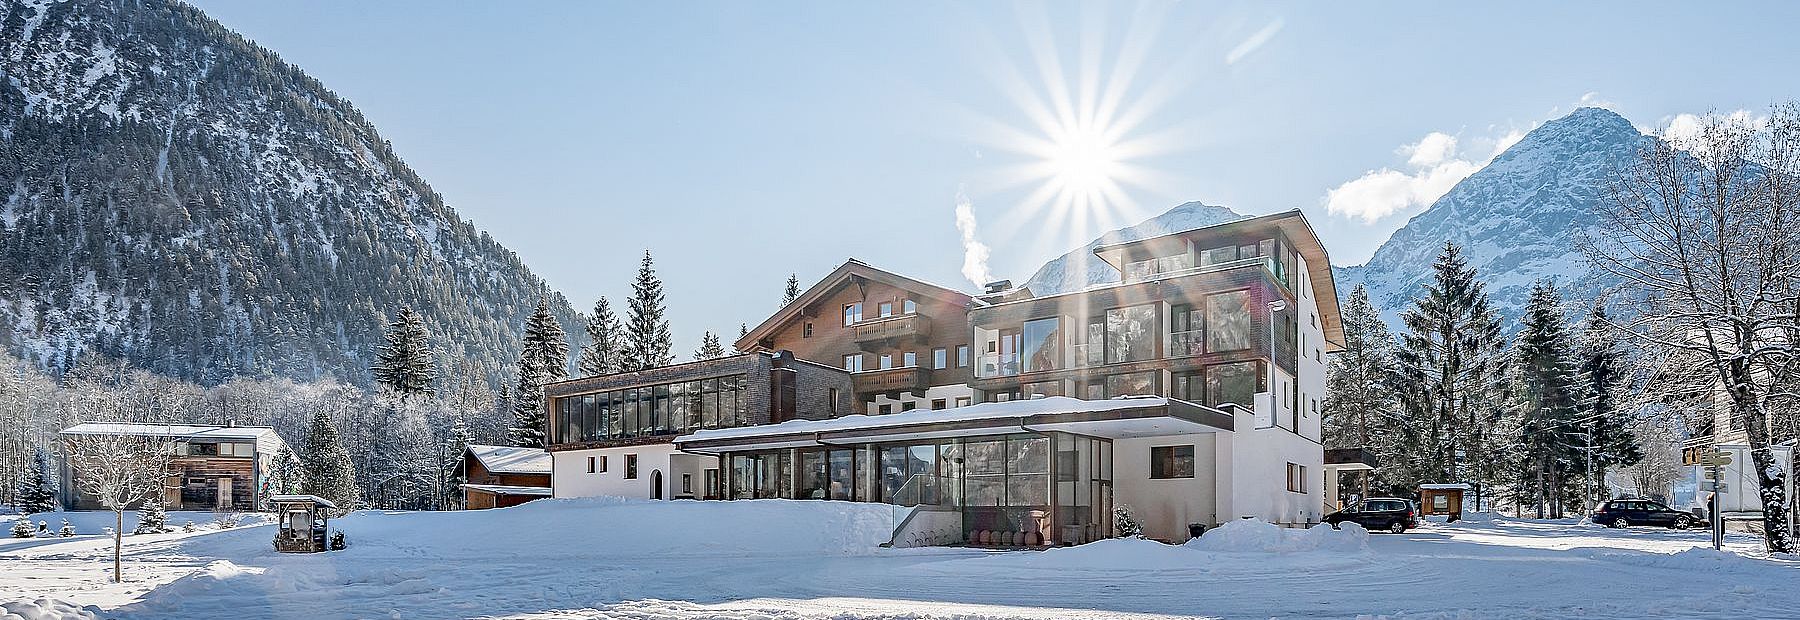 Hotel Fischer am See im Winter bei Sonnenschein mit Blick auf die verschneiten Berge